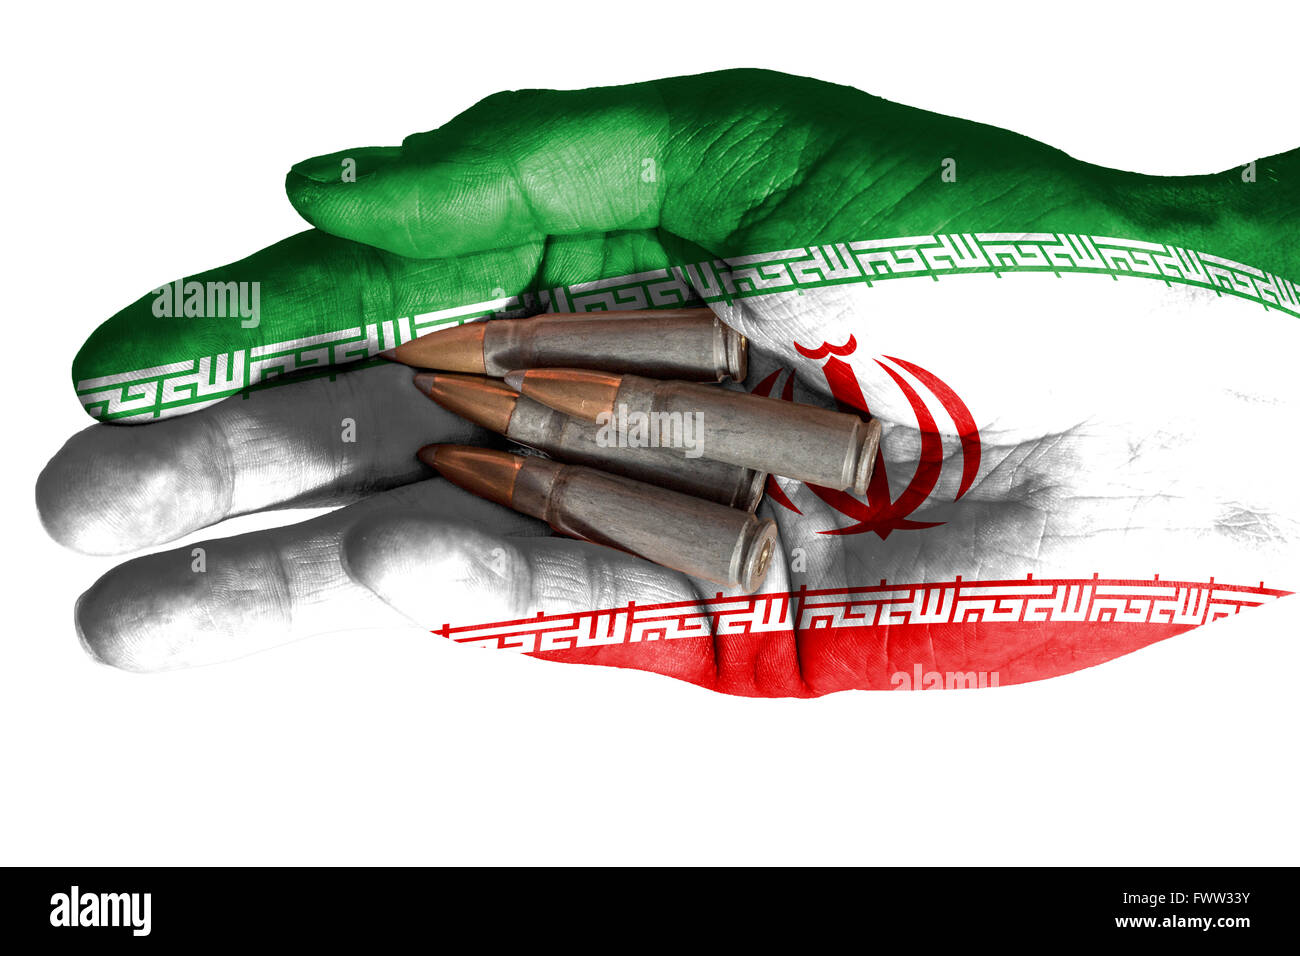 Bandiera dell'Iran sovrapposta la mano di un uomo adulto regge quattro proiettili. Immagine concettuale per la guerra, la violenza, conflitti. Isolat di immagine Foto Stock